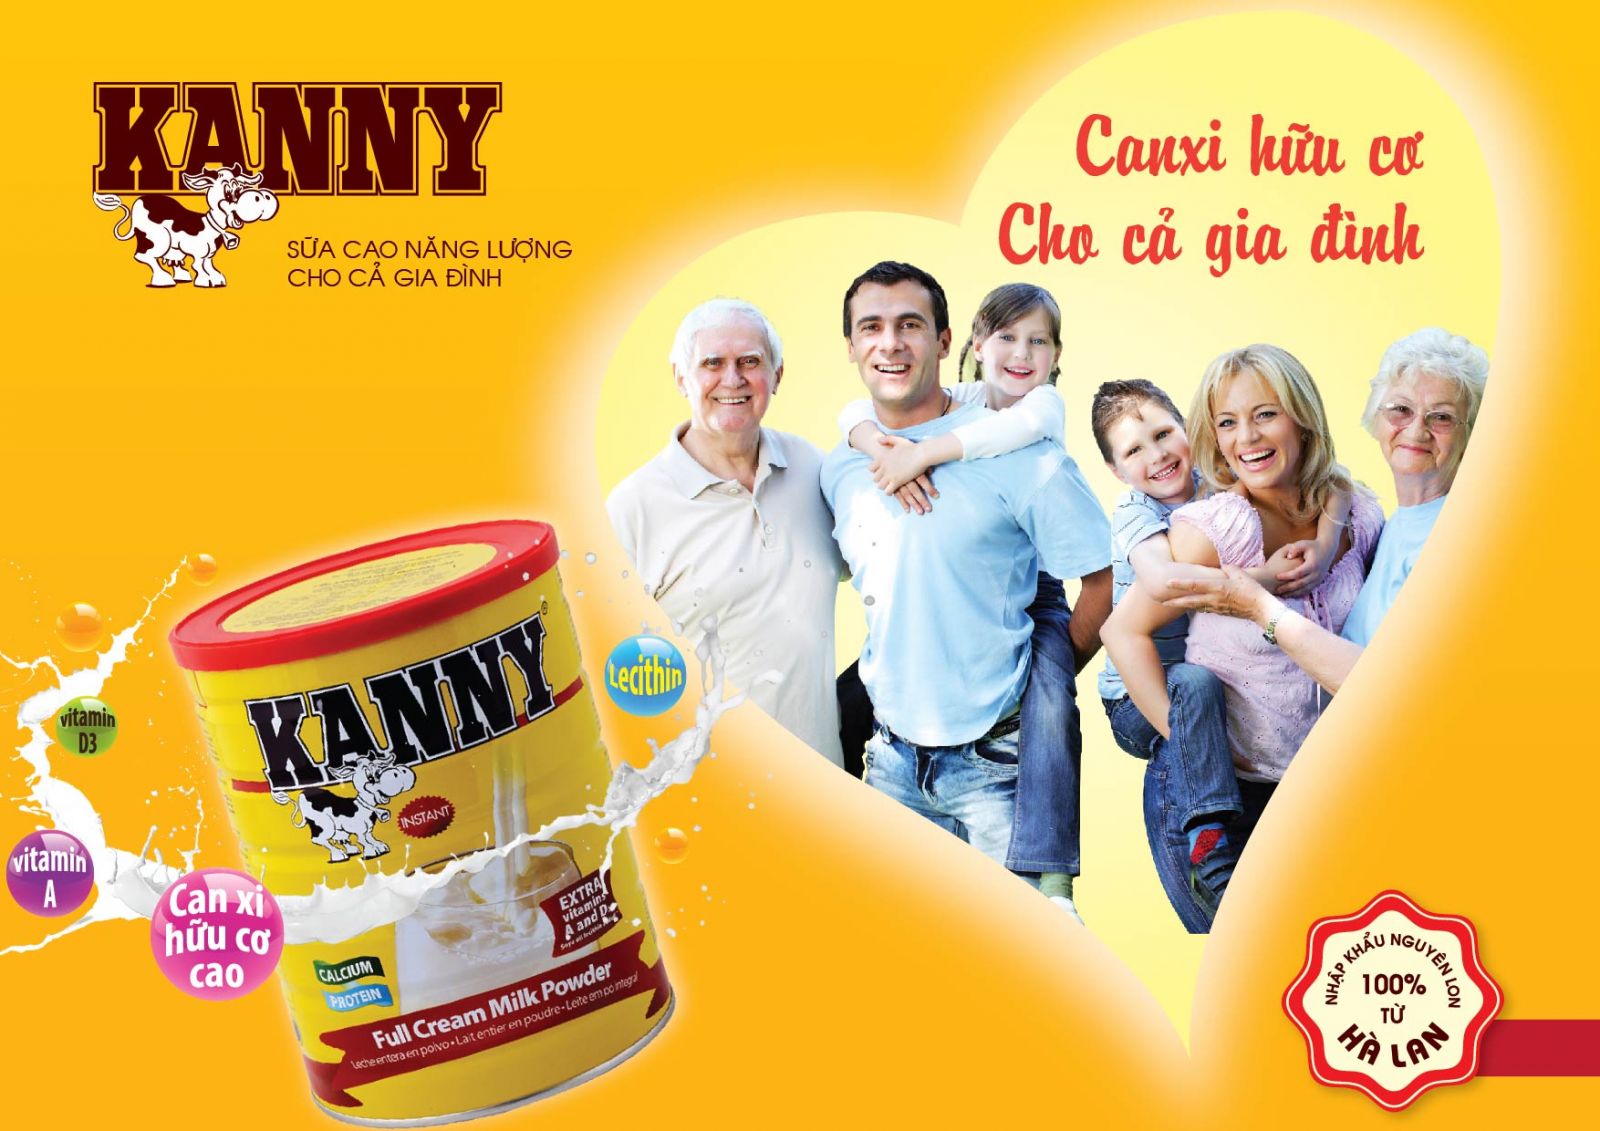 Sữa Kanny dinh dưỡng hợp lý cho mọi thành viên trong gia đình